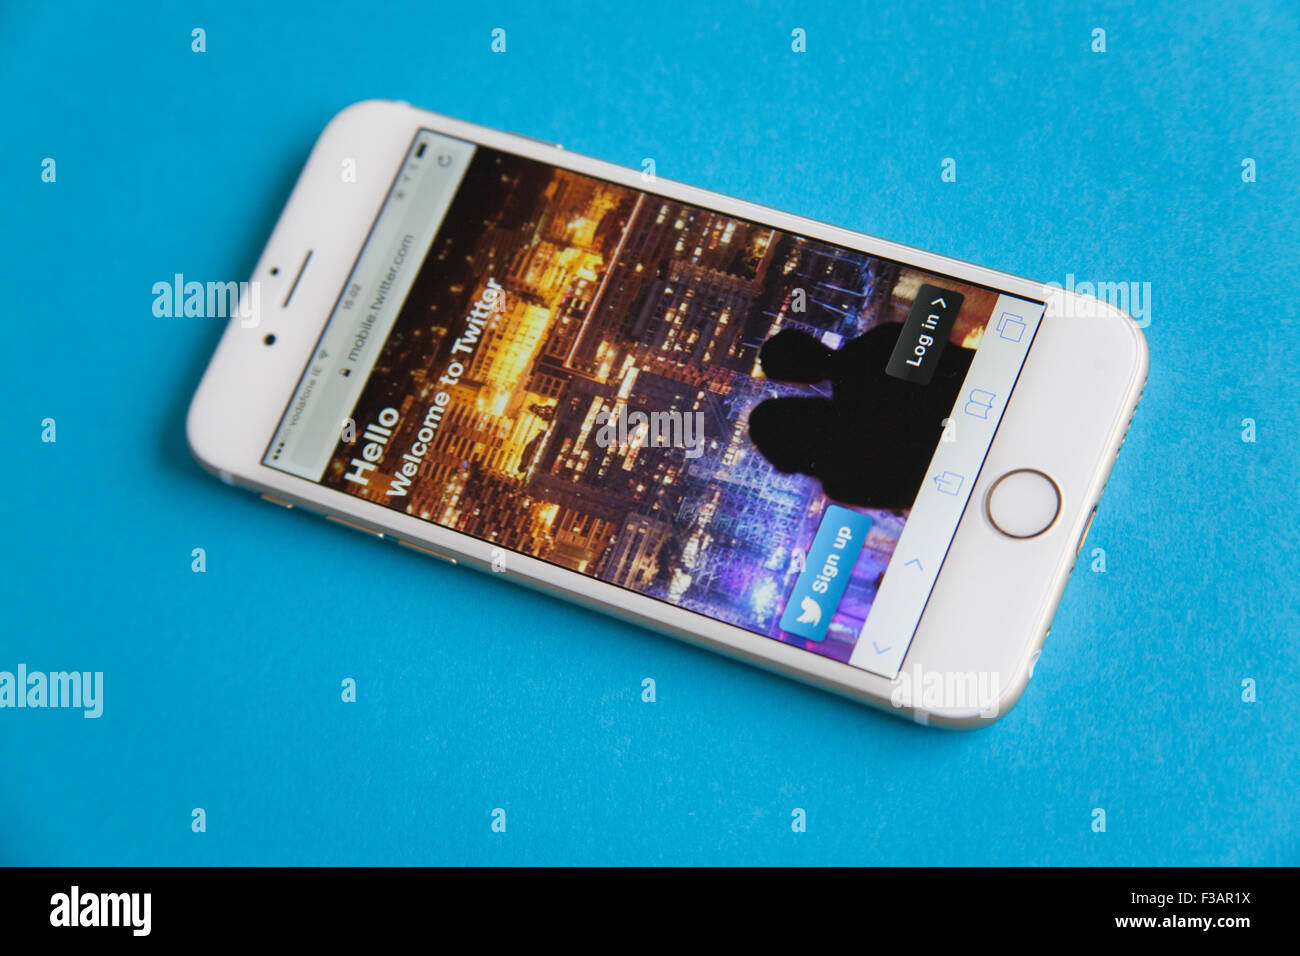 Gold und weiße Apple iPhone 6 mit Twitter anmelden Bildschirm vor einem blauen Hintergrund Stockfoto